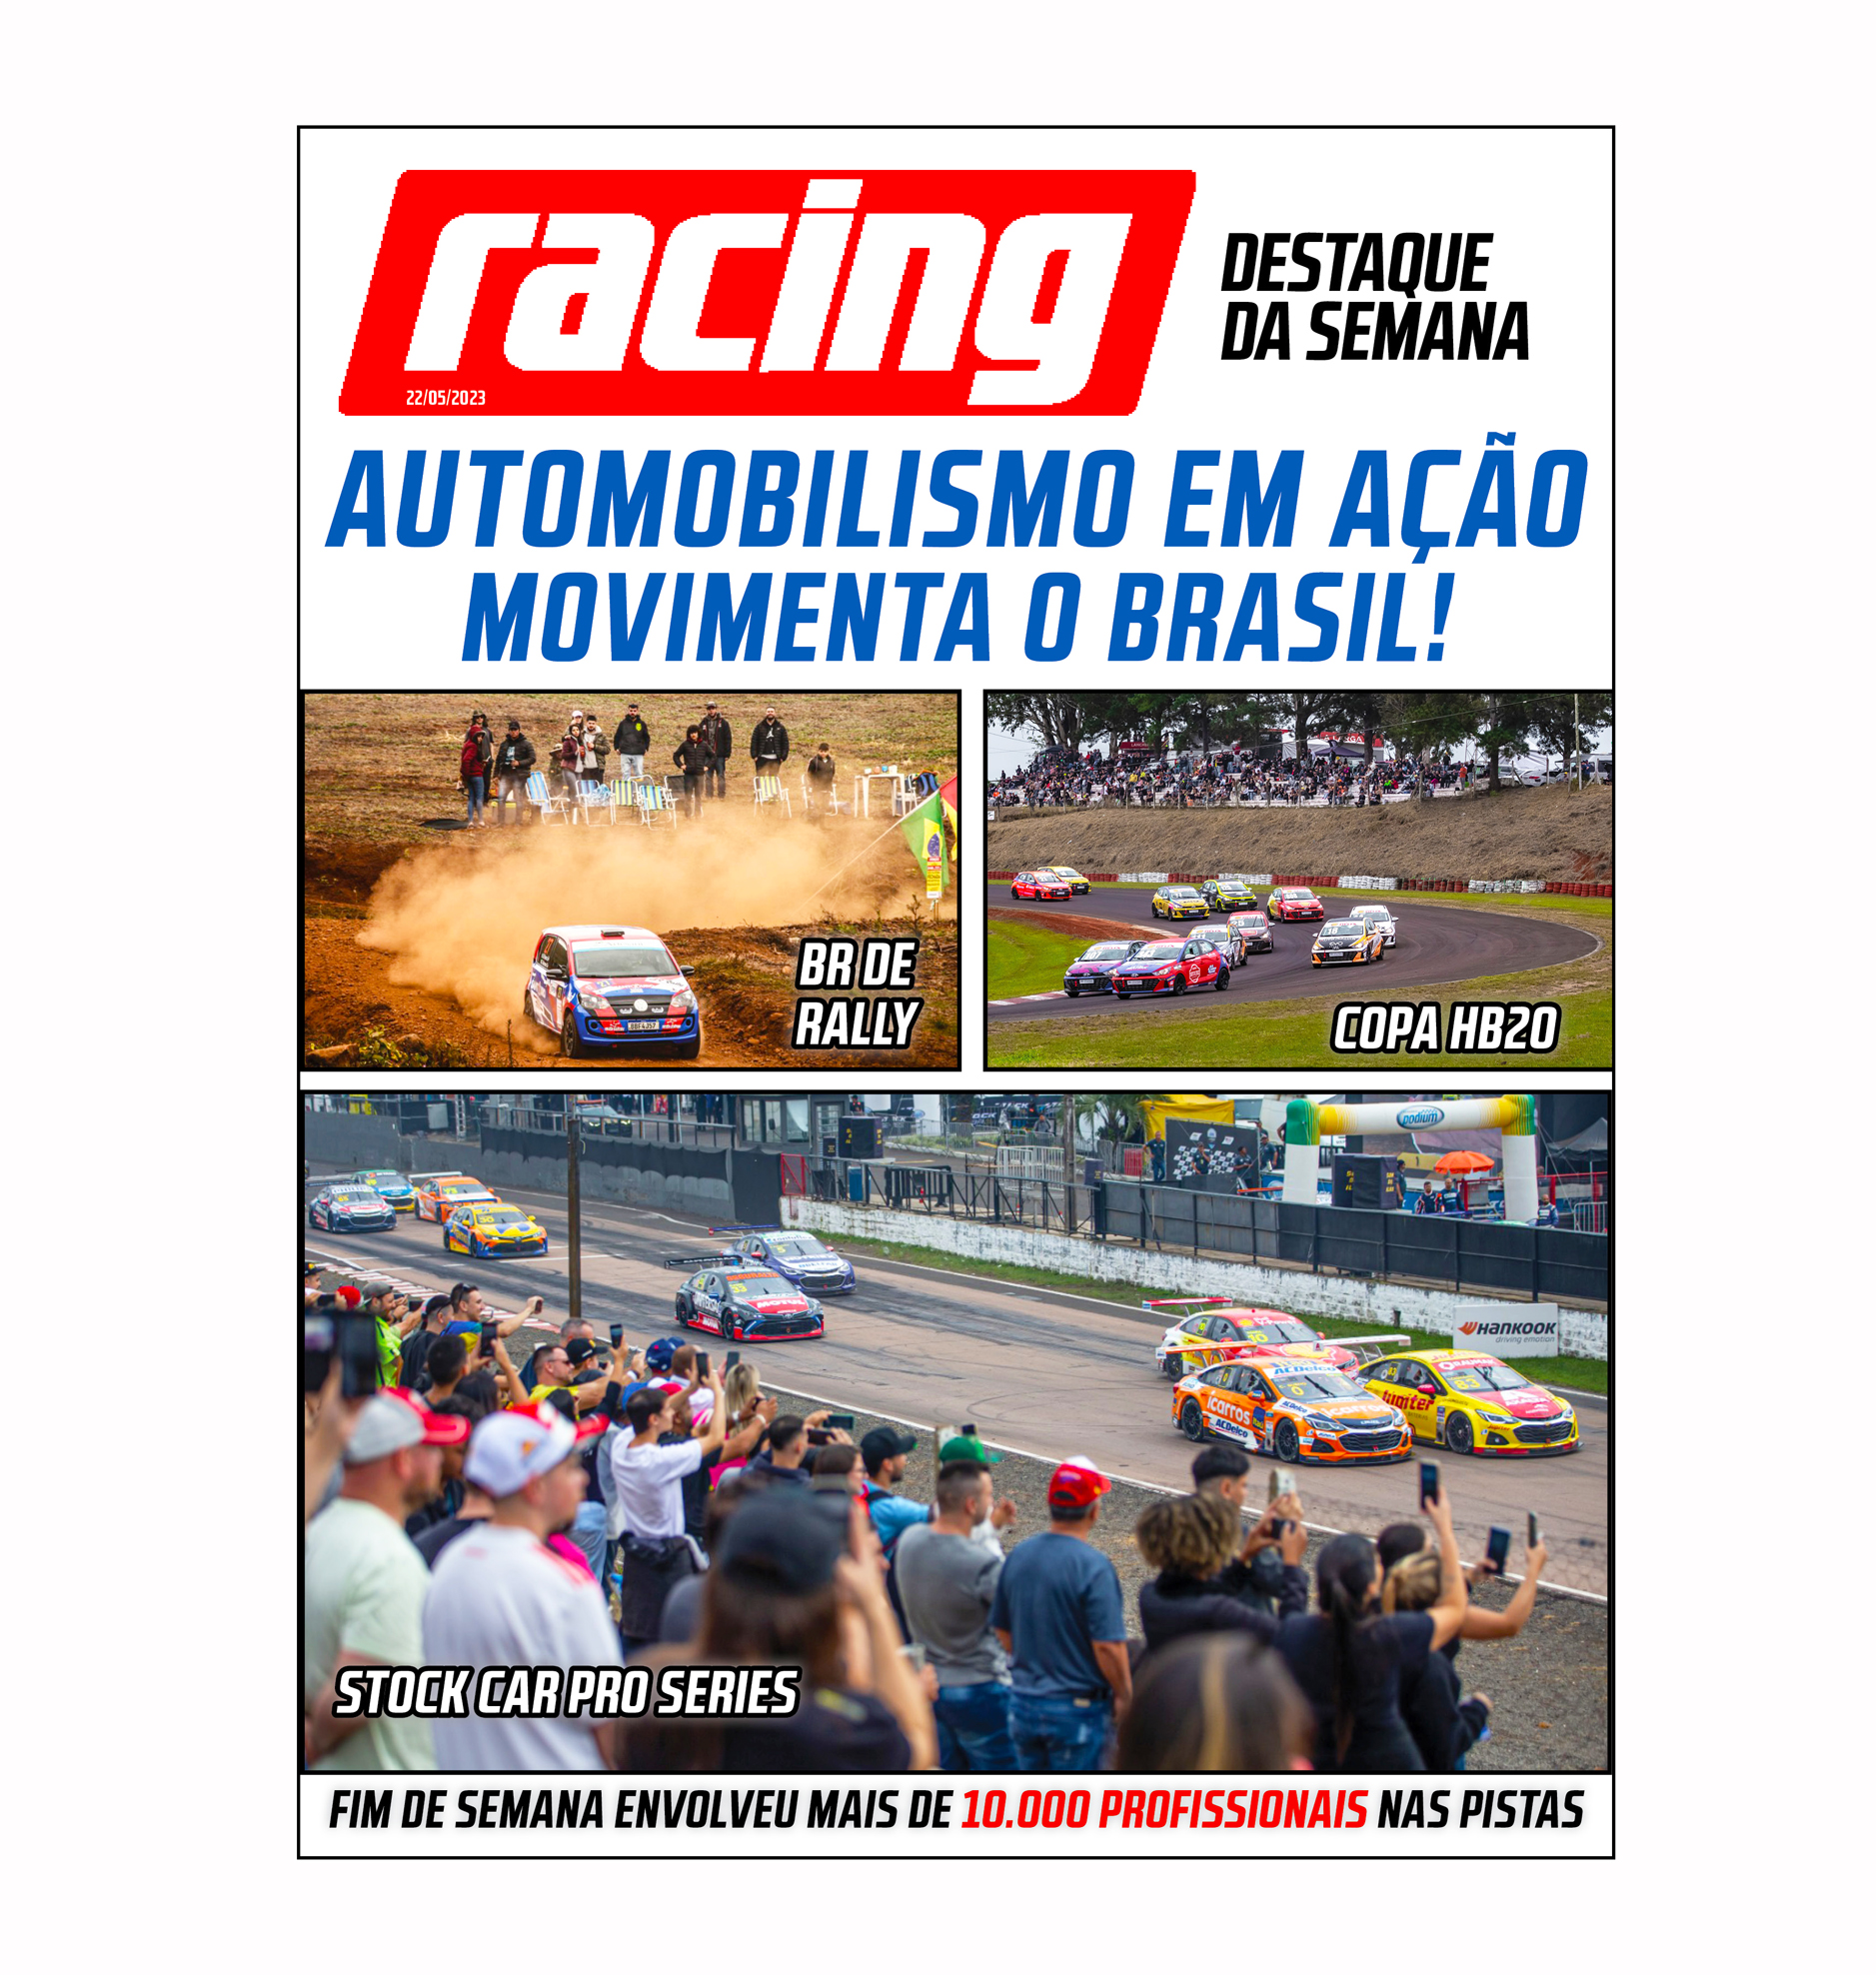 Automobilismo movimenta o Brasil